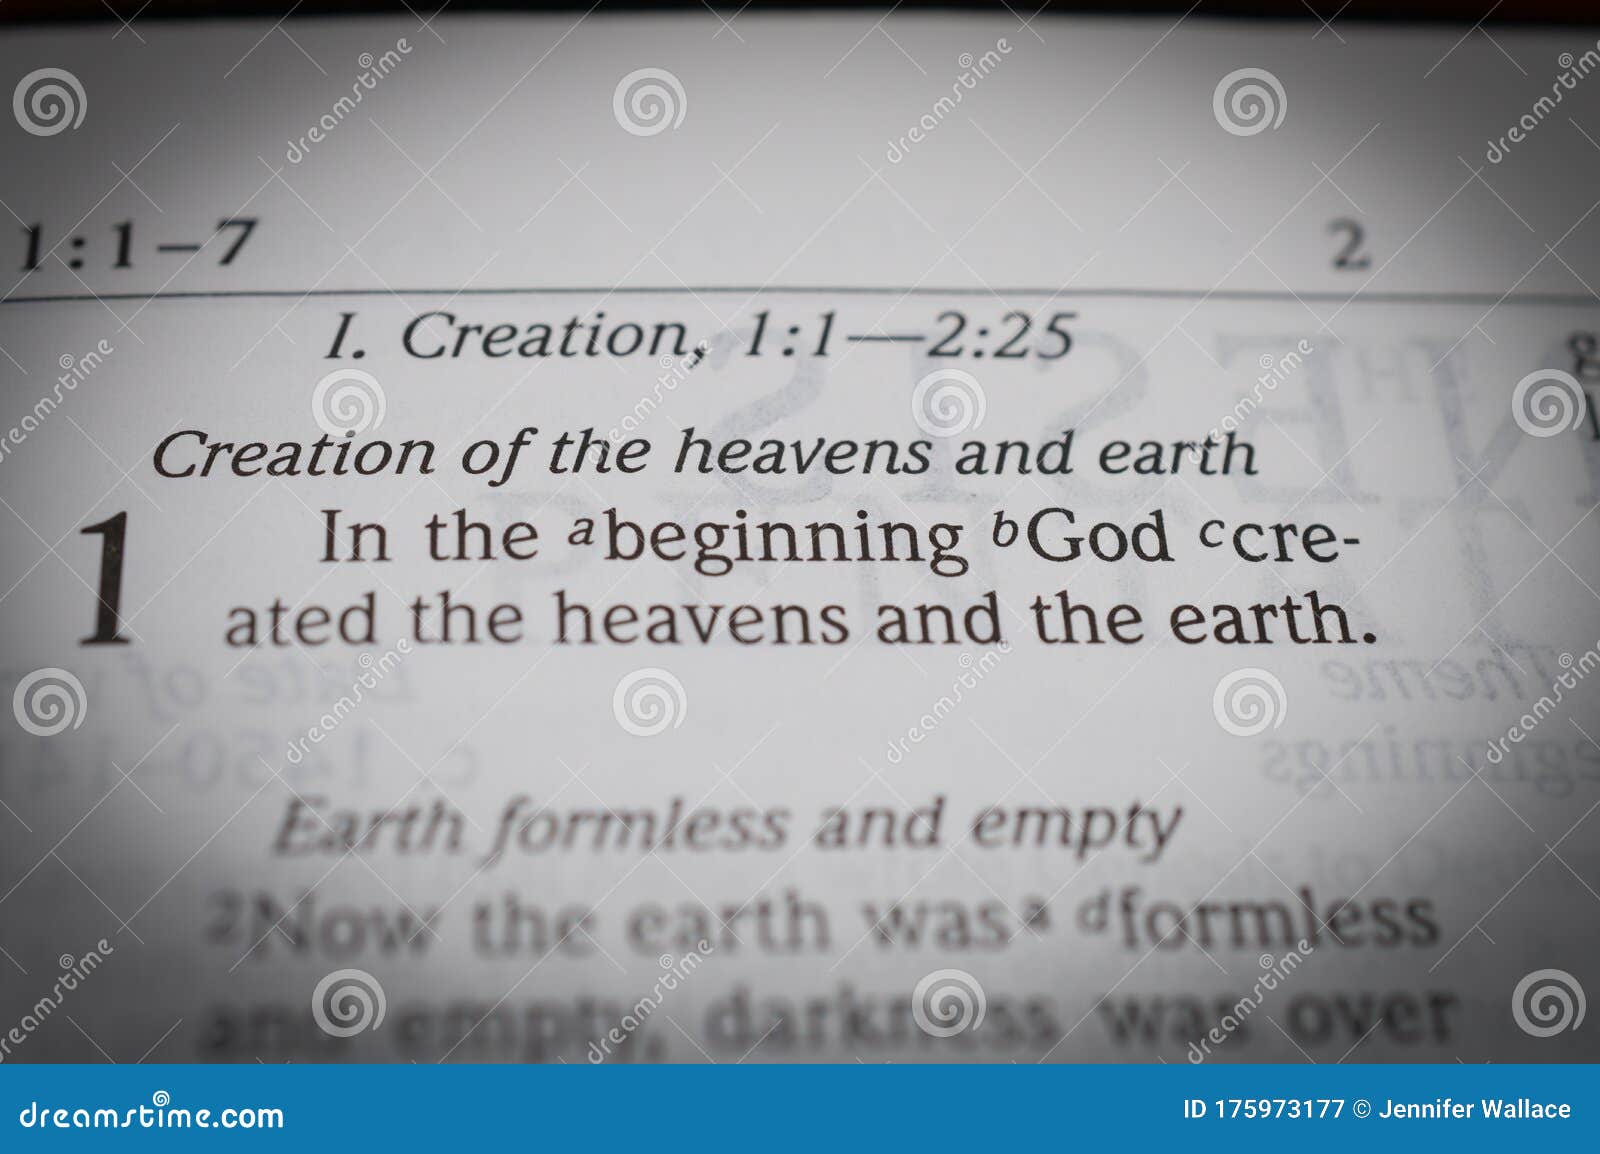 genesis 1:1 in the beginning